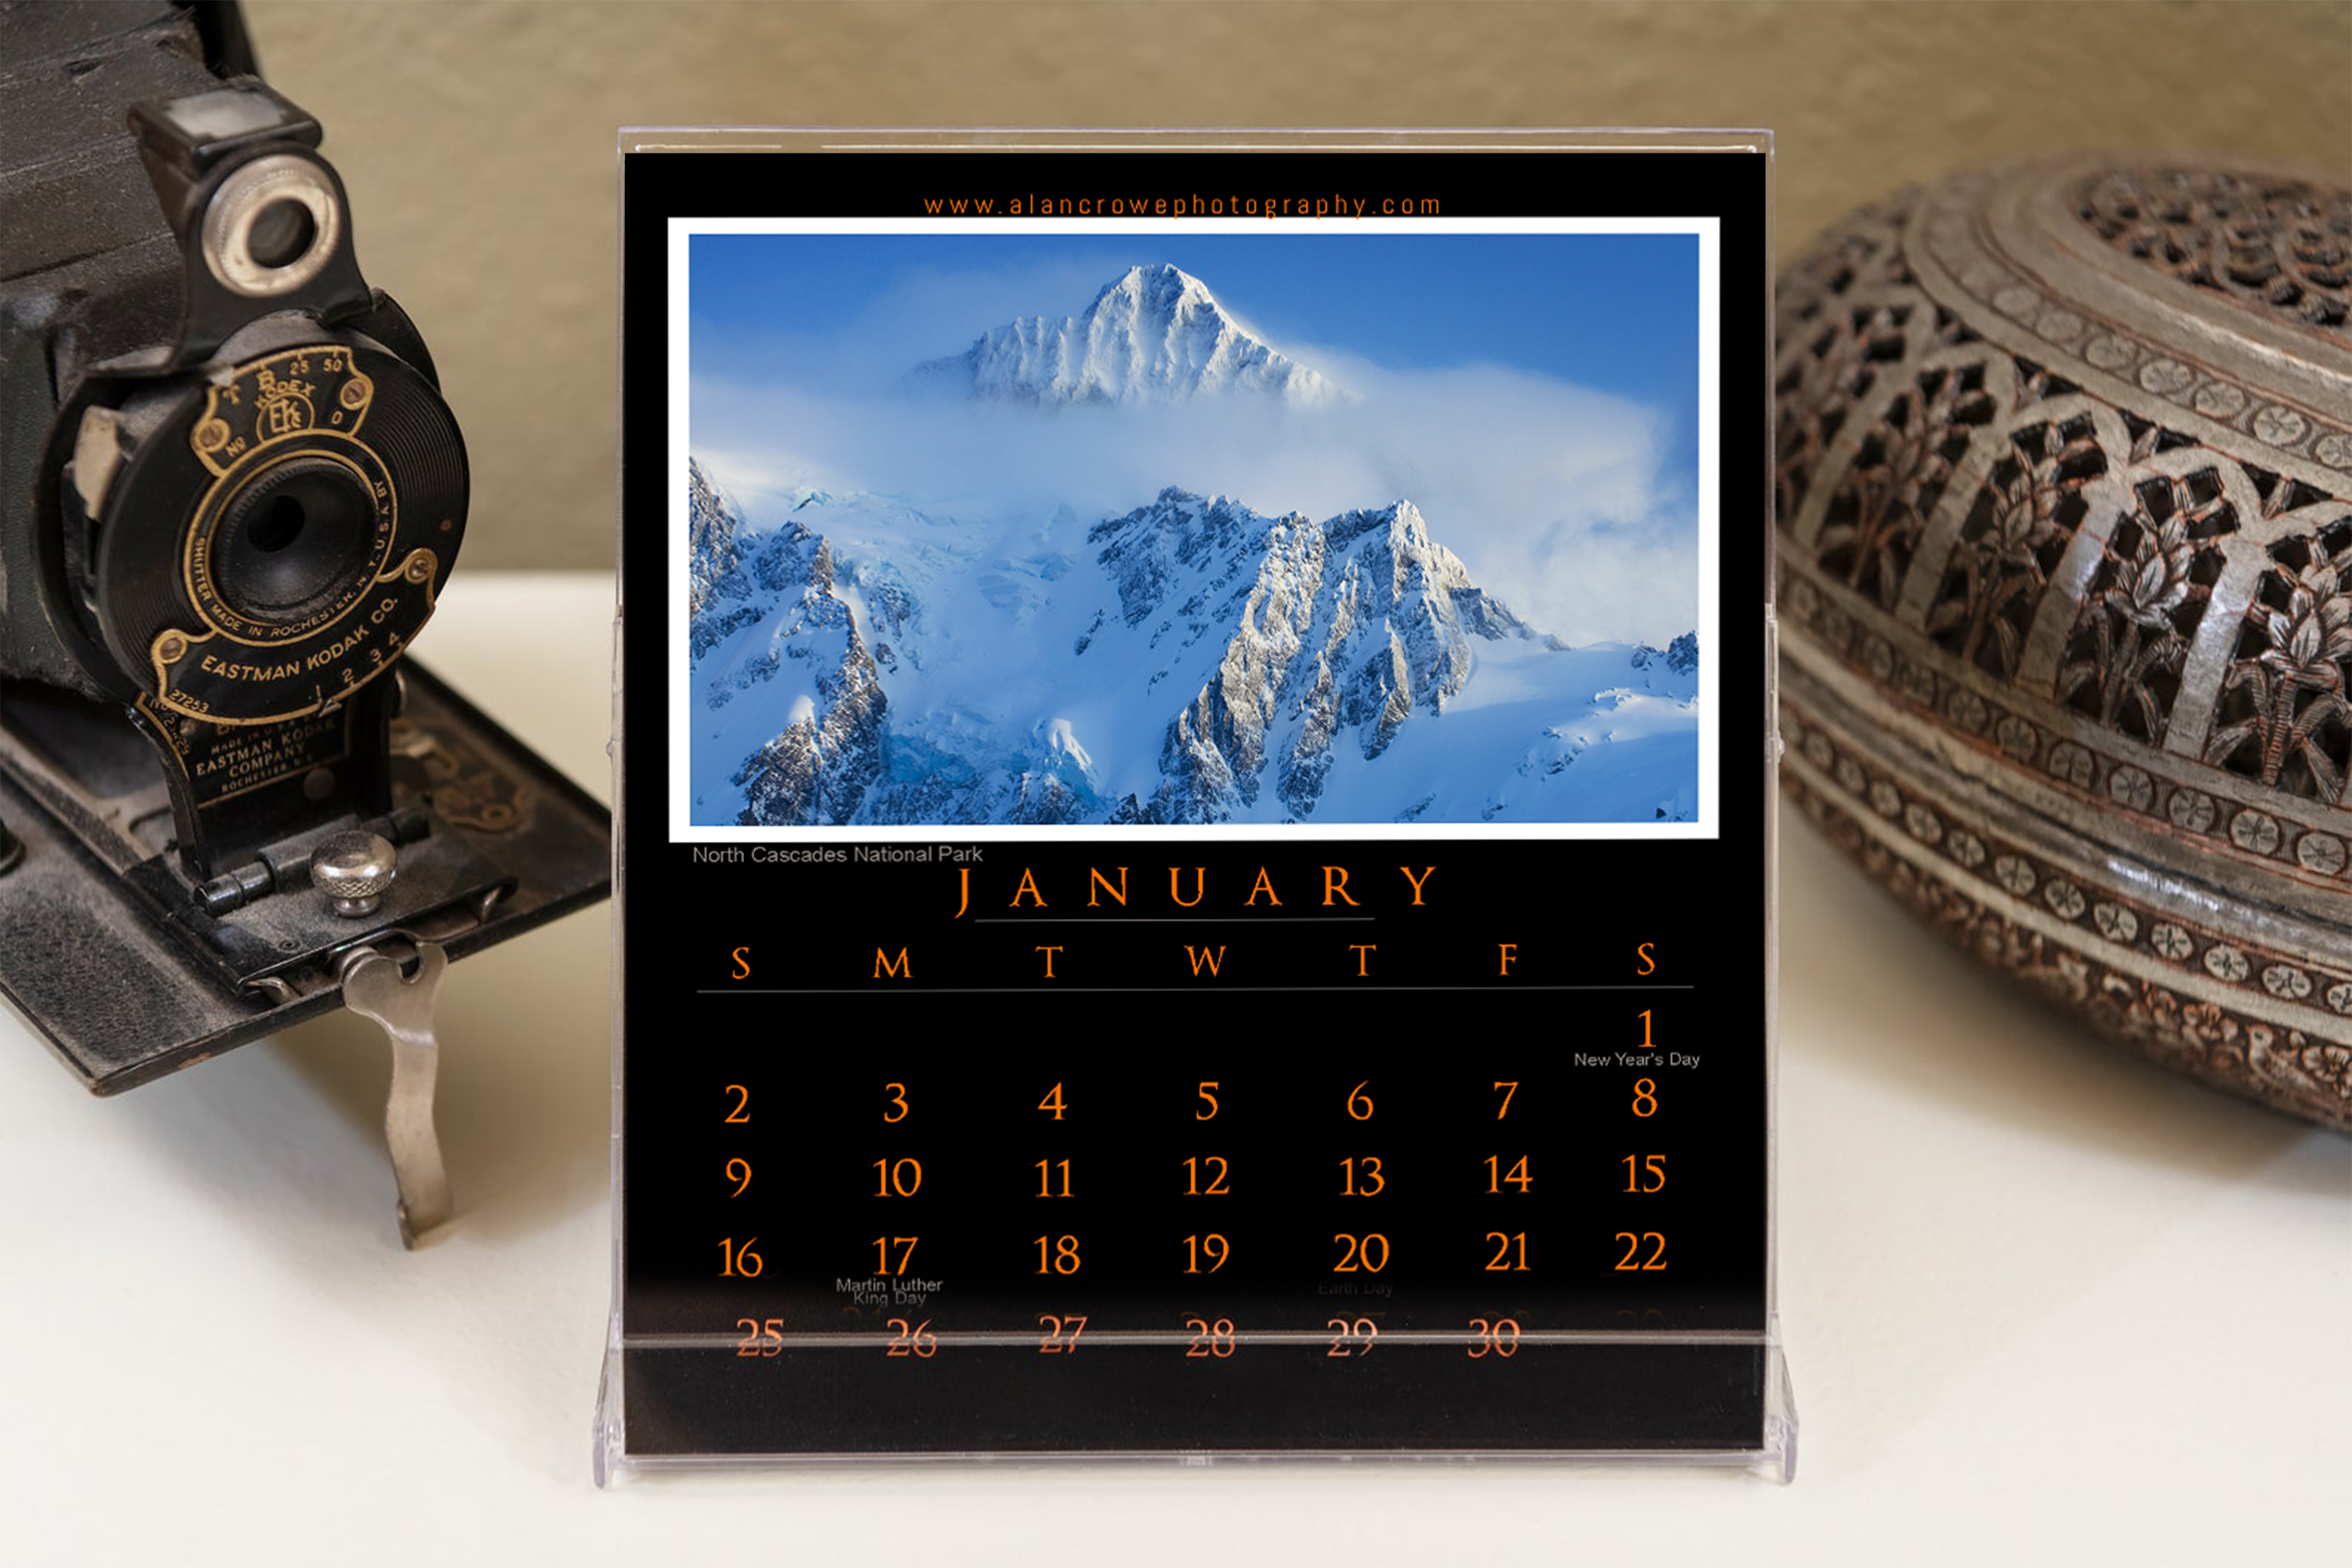 National Parks Desktop Calendar 2022